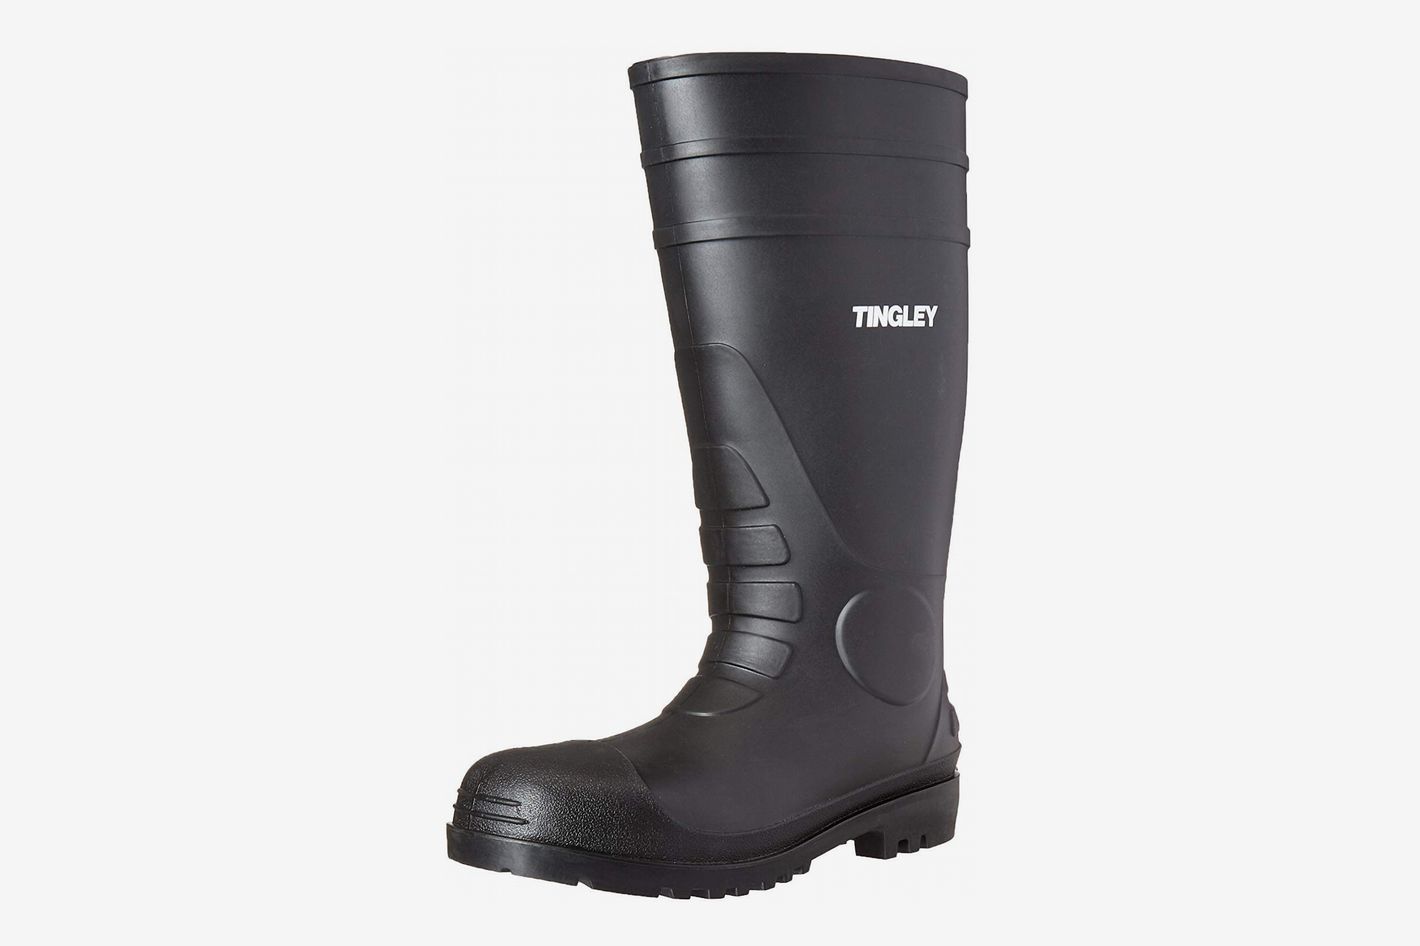 size 12 men's rain boots